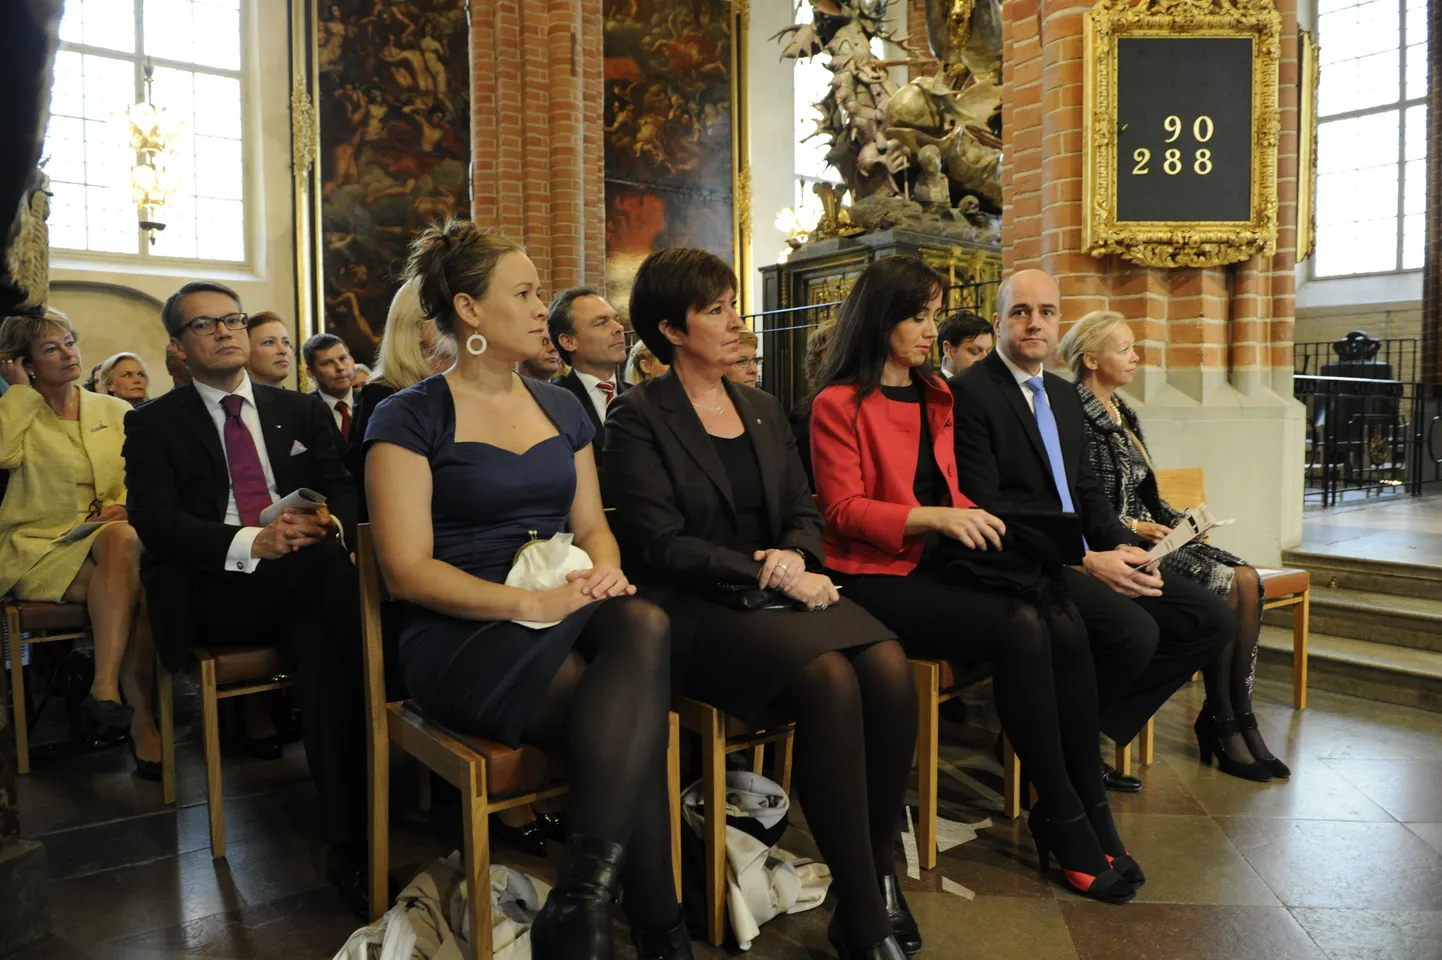 Jumalateenistus Rootsi parlamendi avaistungi eel. Ees vasakult: roheliste liider Marie Wettergren, sotsiaaldemokraatide liider Mona Sahlin, Filippa Reinfeldt ja peaminister Fredrik Reinfeldt.